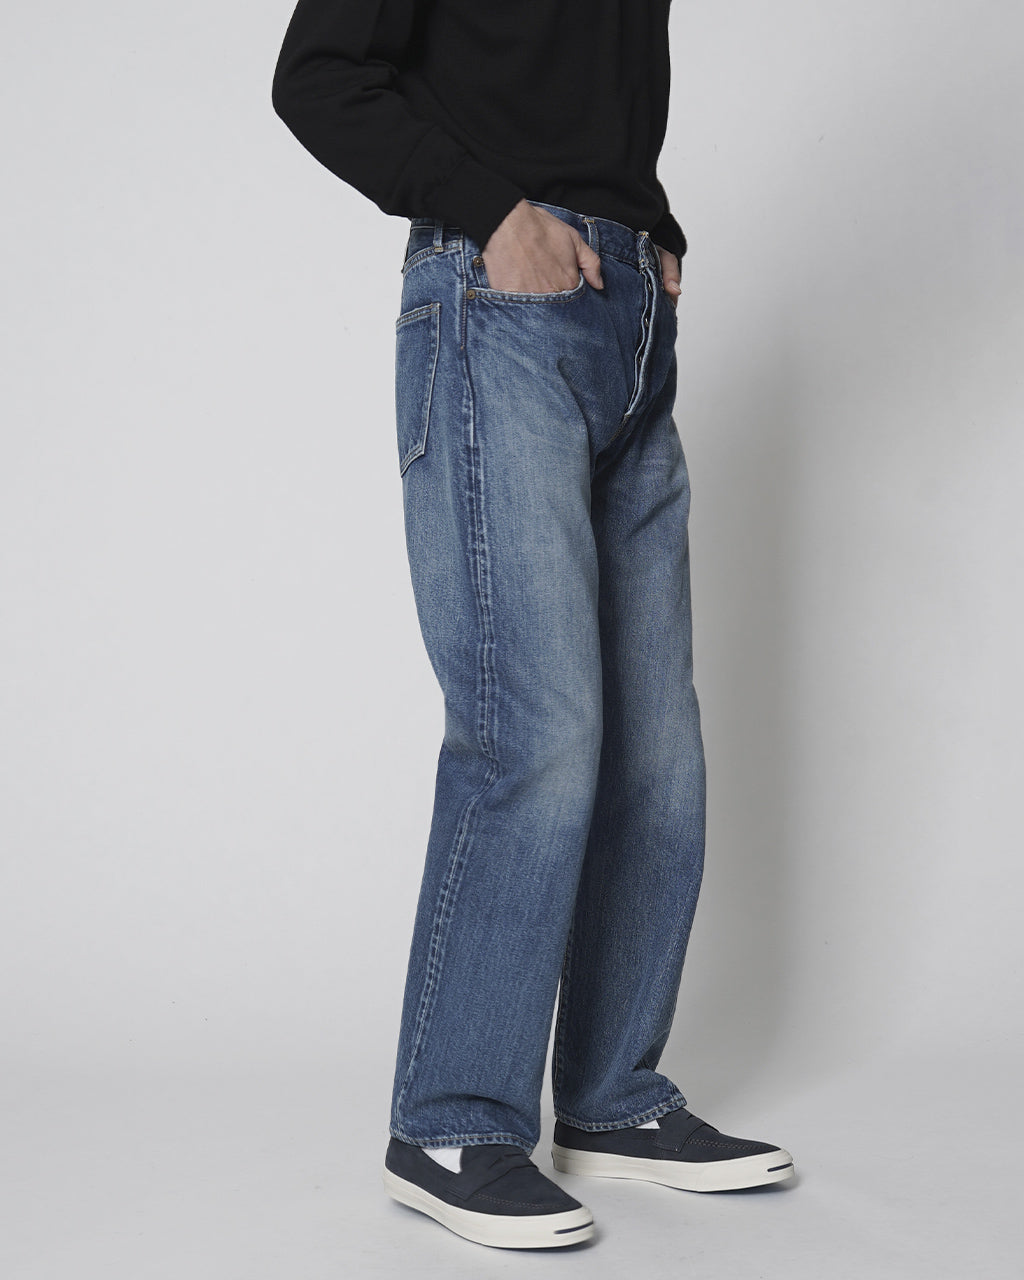 CIOTA シオタ デニム ストレート 5ポケット パンツ Straight 5 Pocket Pants ブラック 本藍 ブルー ネイビー ダメージ PTLM-21STB 【送料無料】 正規取扱店